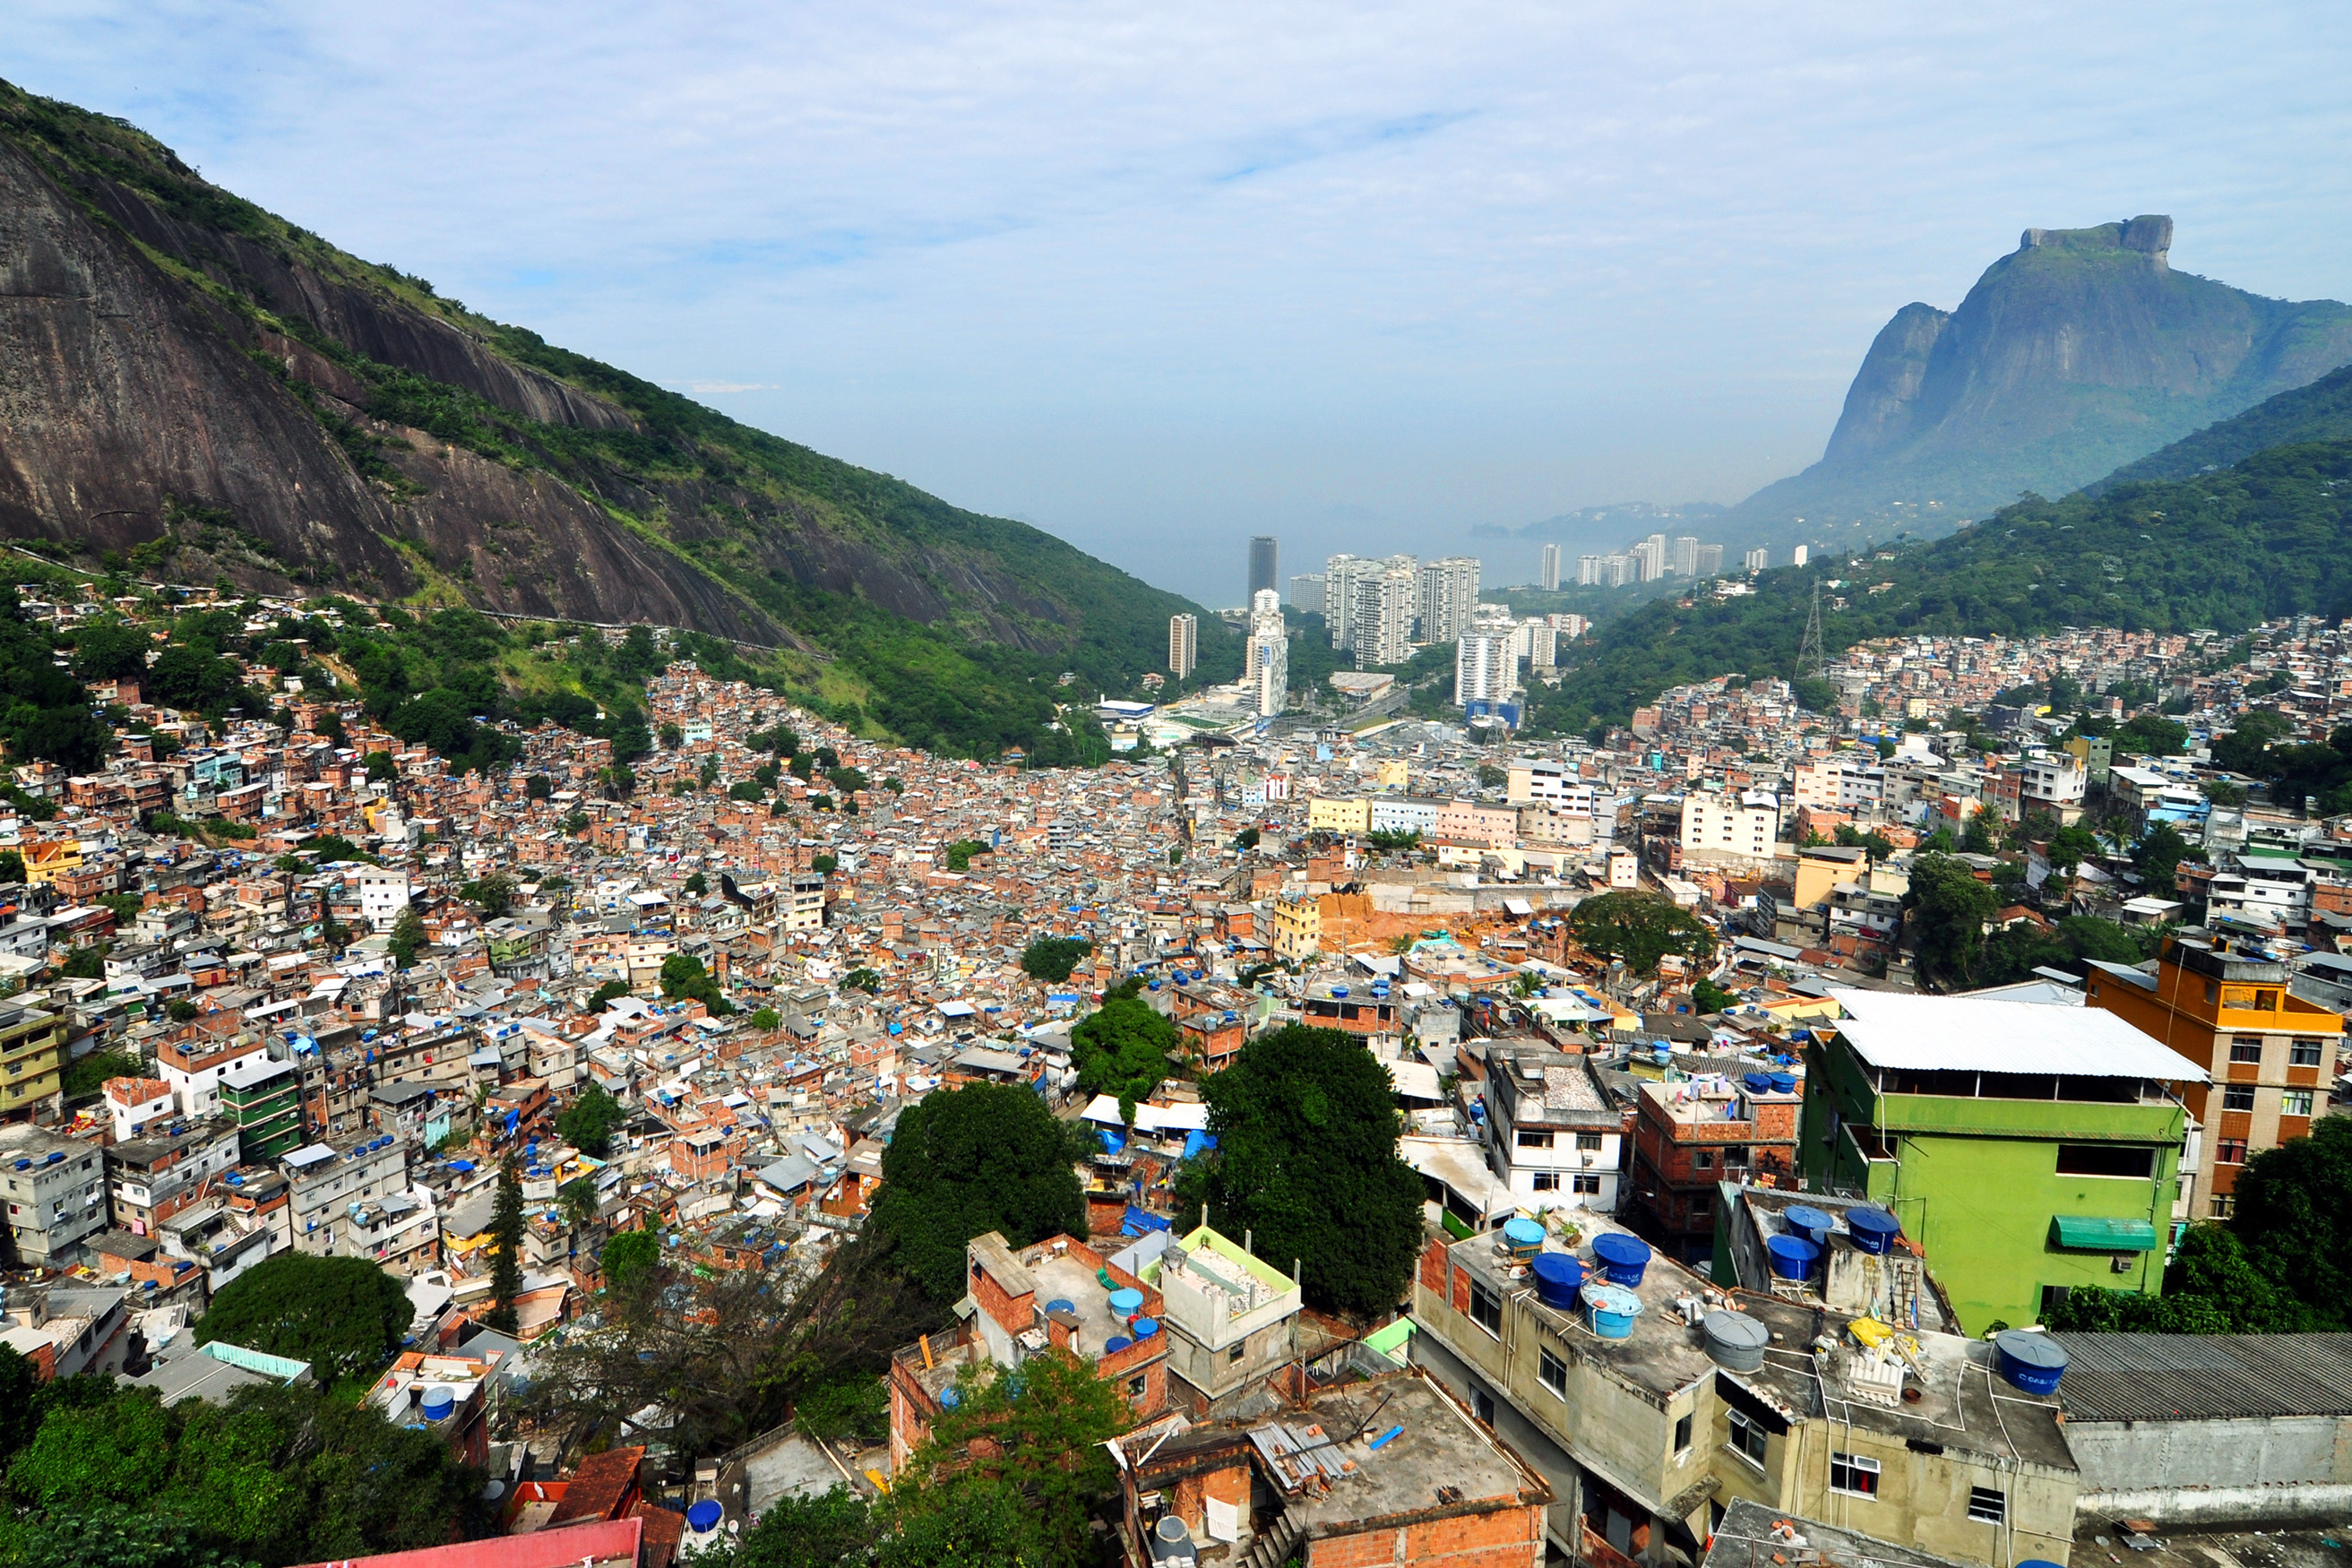 The Incredible Hulk film location: Rocinha Favela, Rio De Janeiro, Brazil